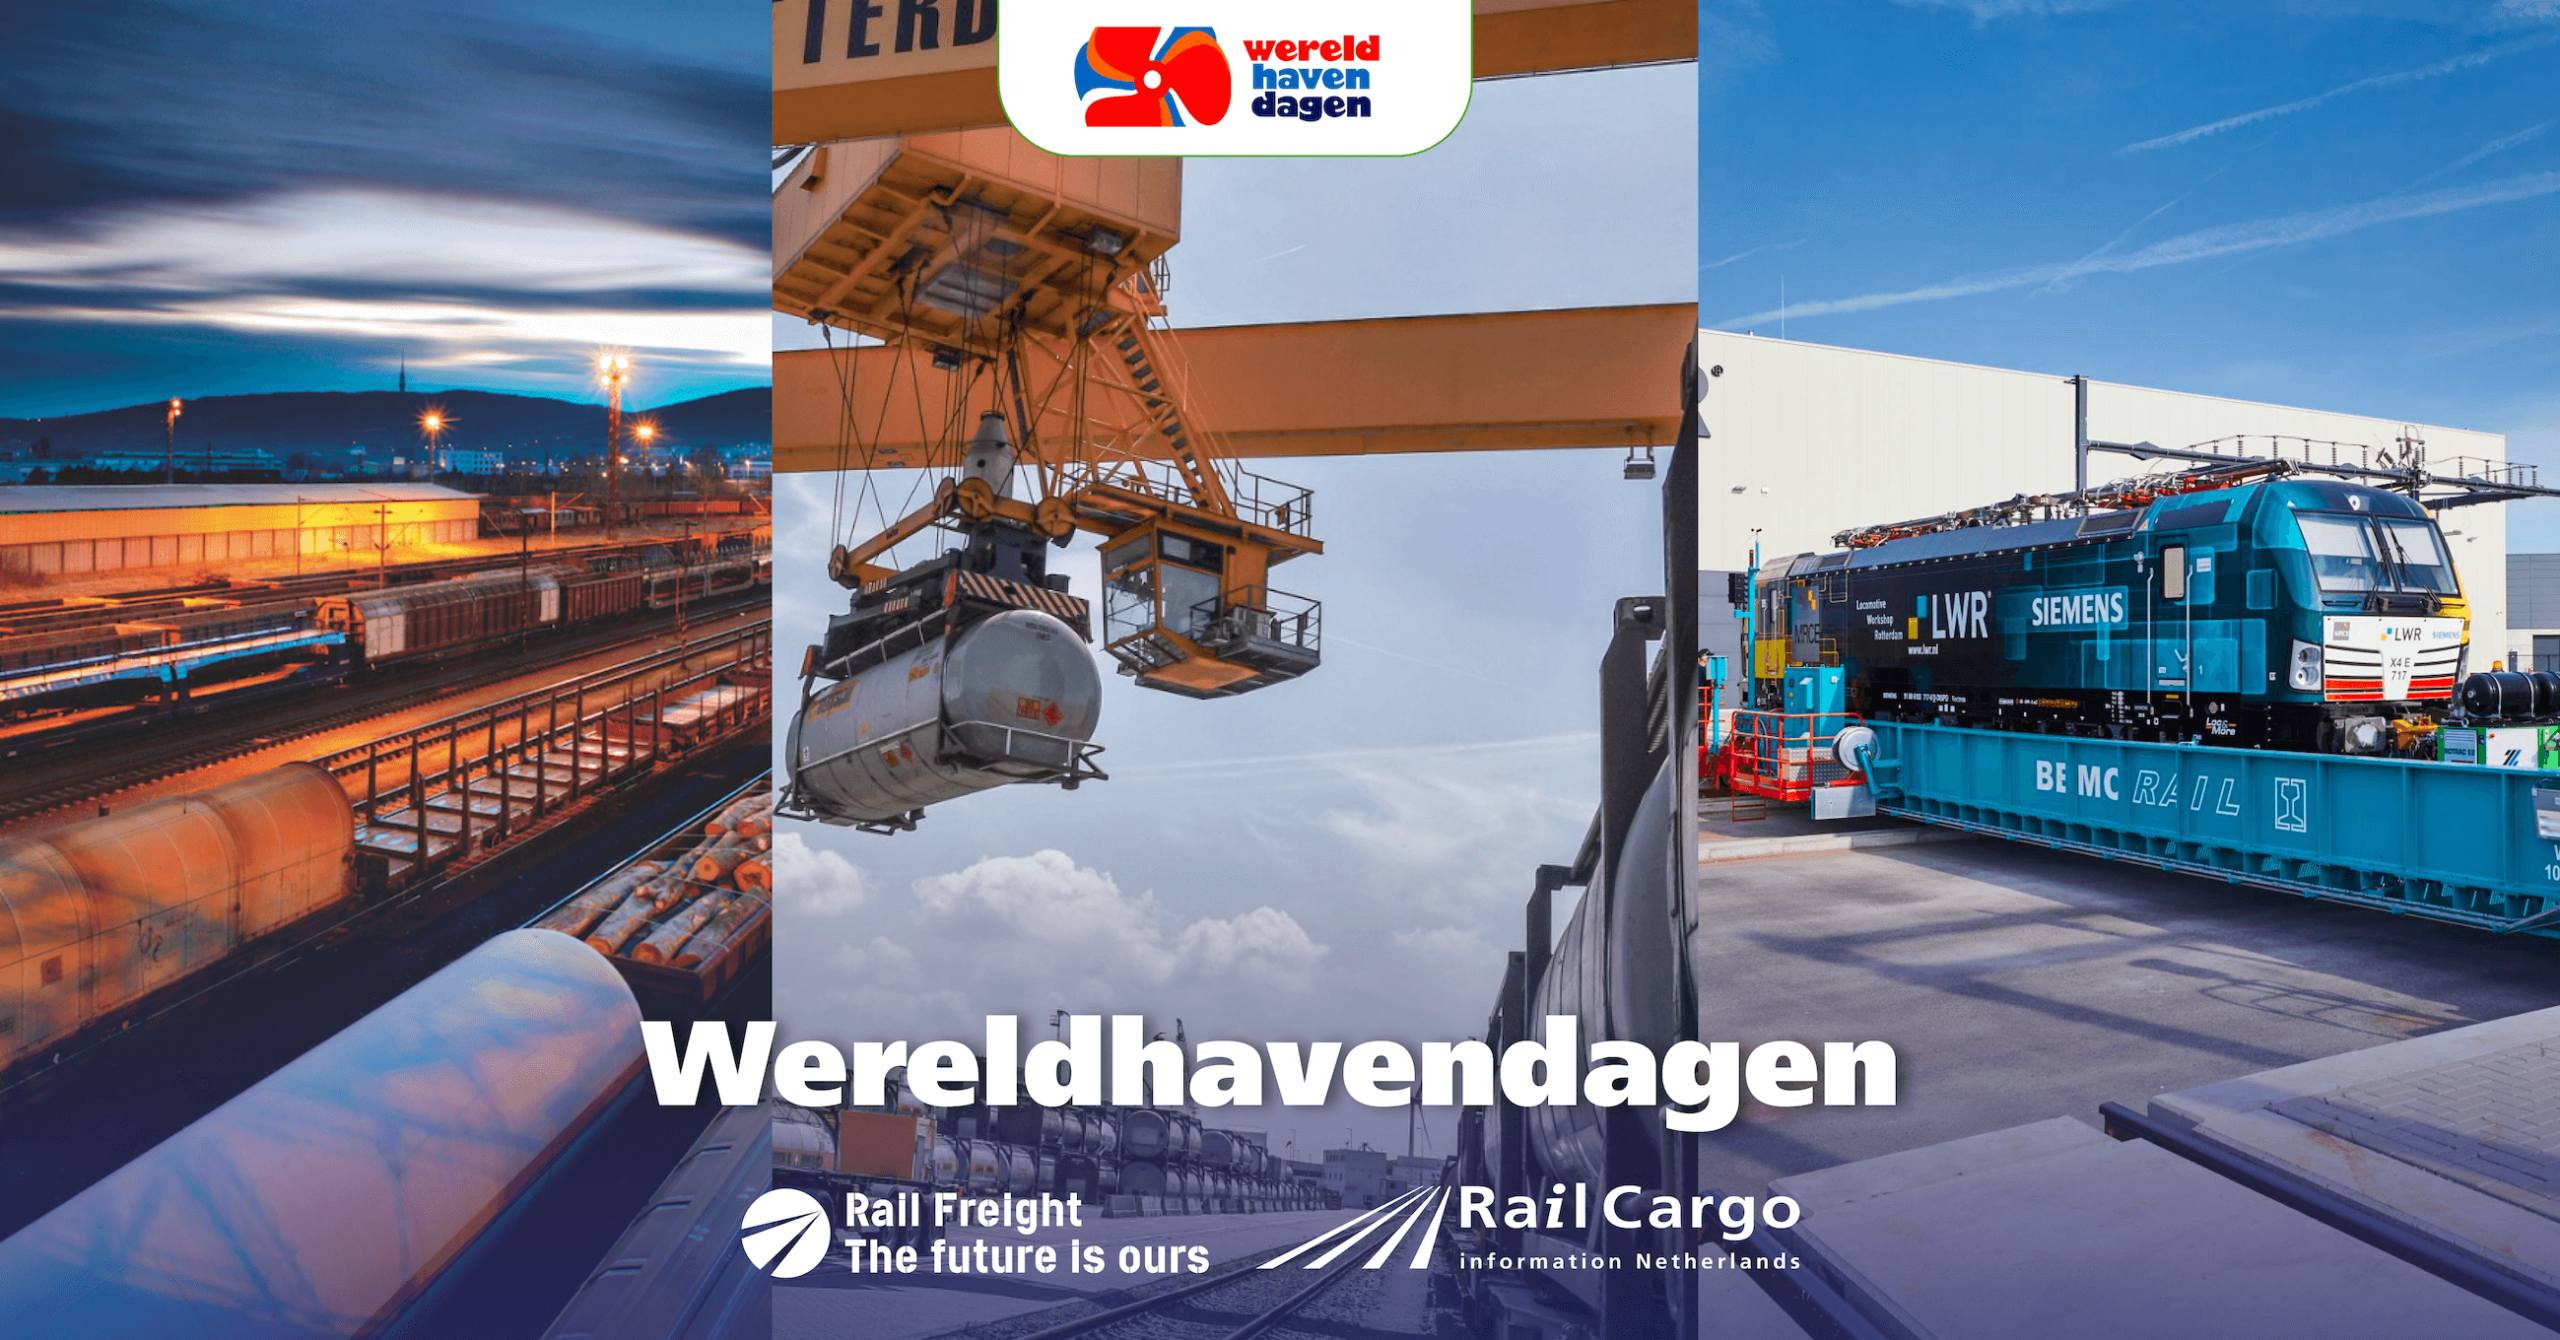 Rail freight tijdens de wereldhavendagen in rotterdam